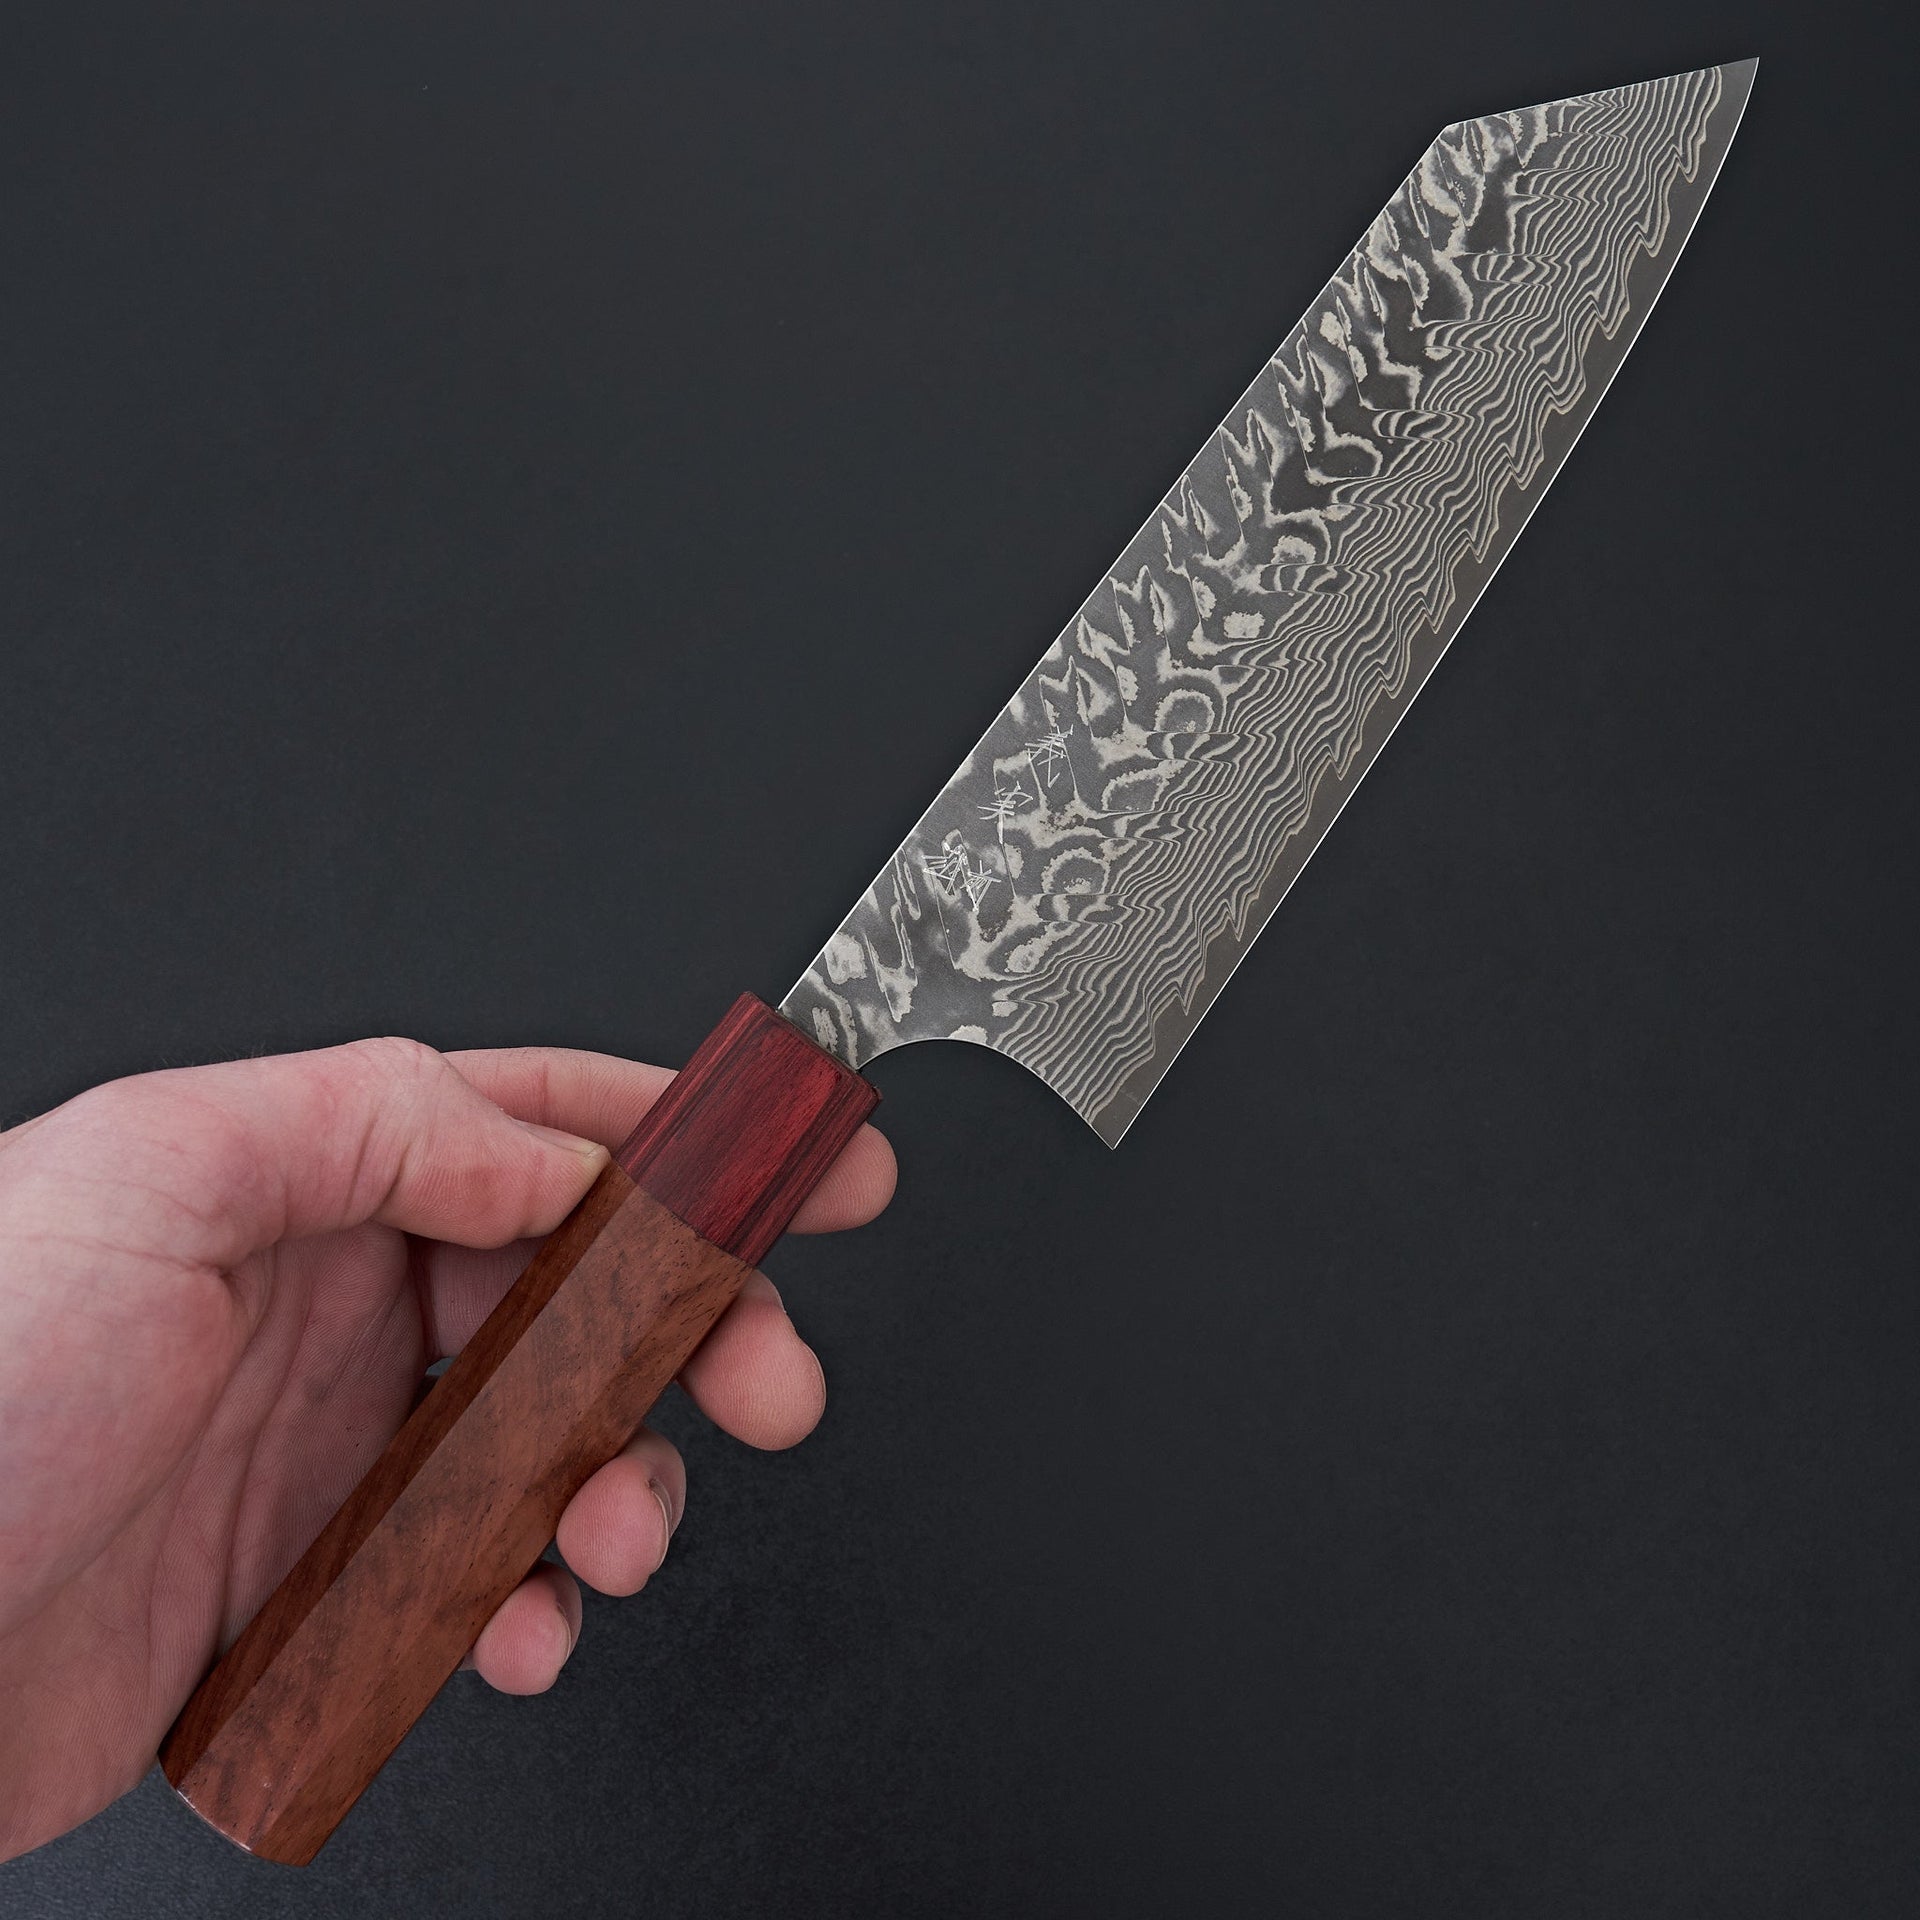 Kato SG2 Damascus Bunka 165mm-Knife-Yoshimi Kato-Carbon Knife Co